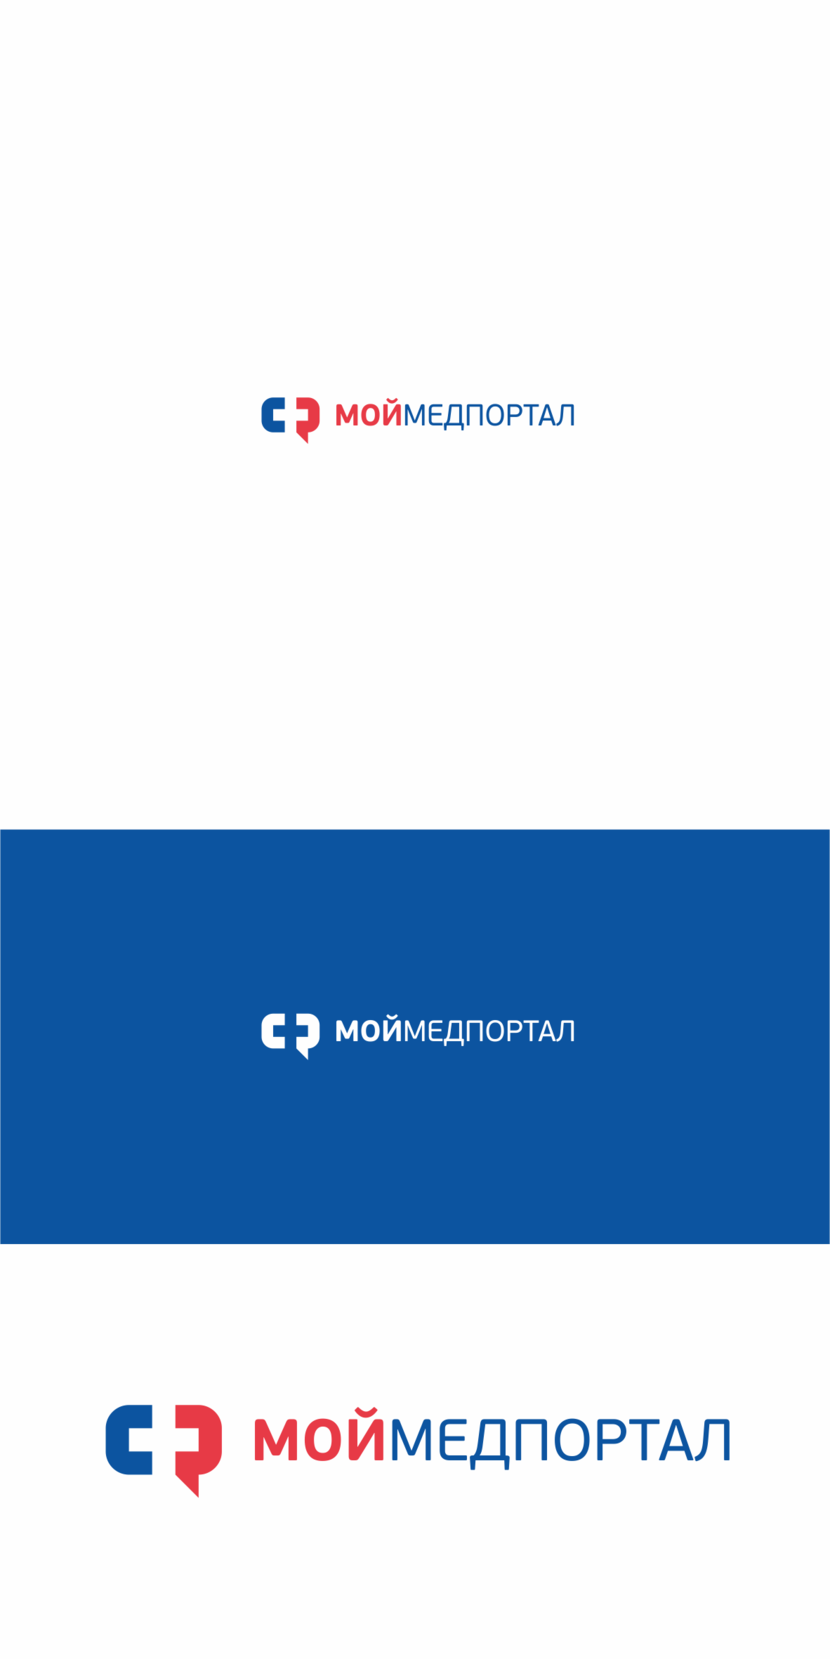 + - Разработка логотипа для медицинского портала онлайн записи в больницу